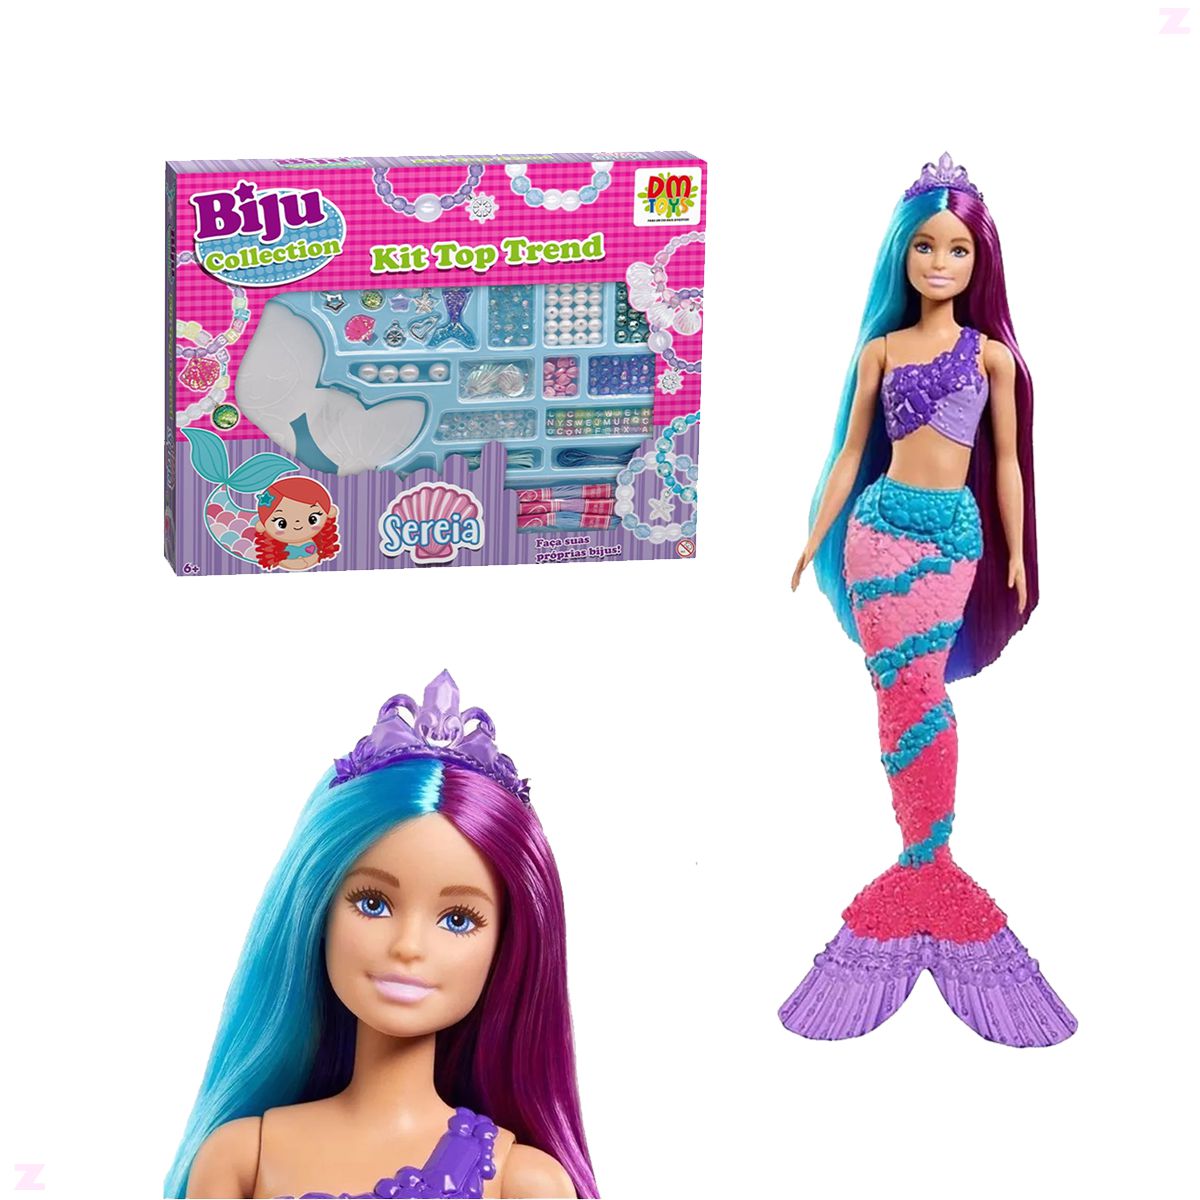 Jogos com a boneca sereia! Série infantil das bonecas Barbie